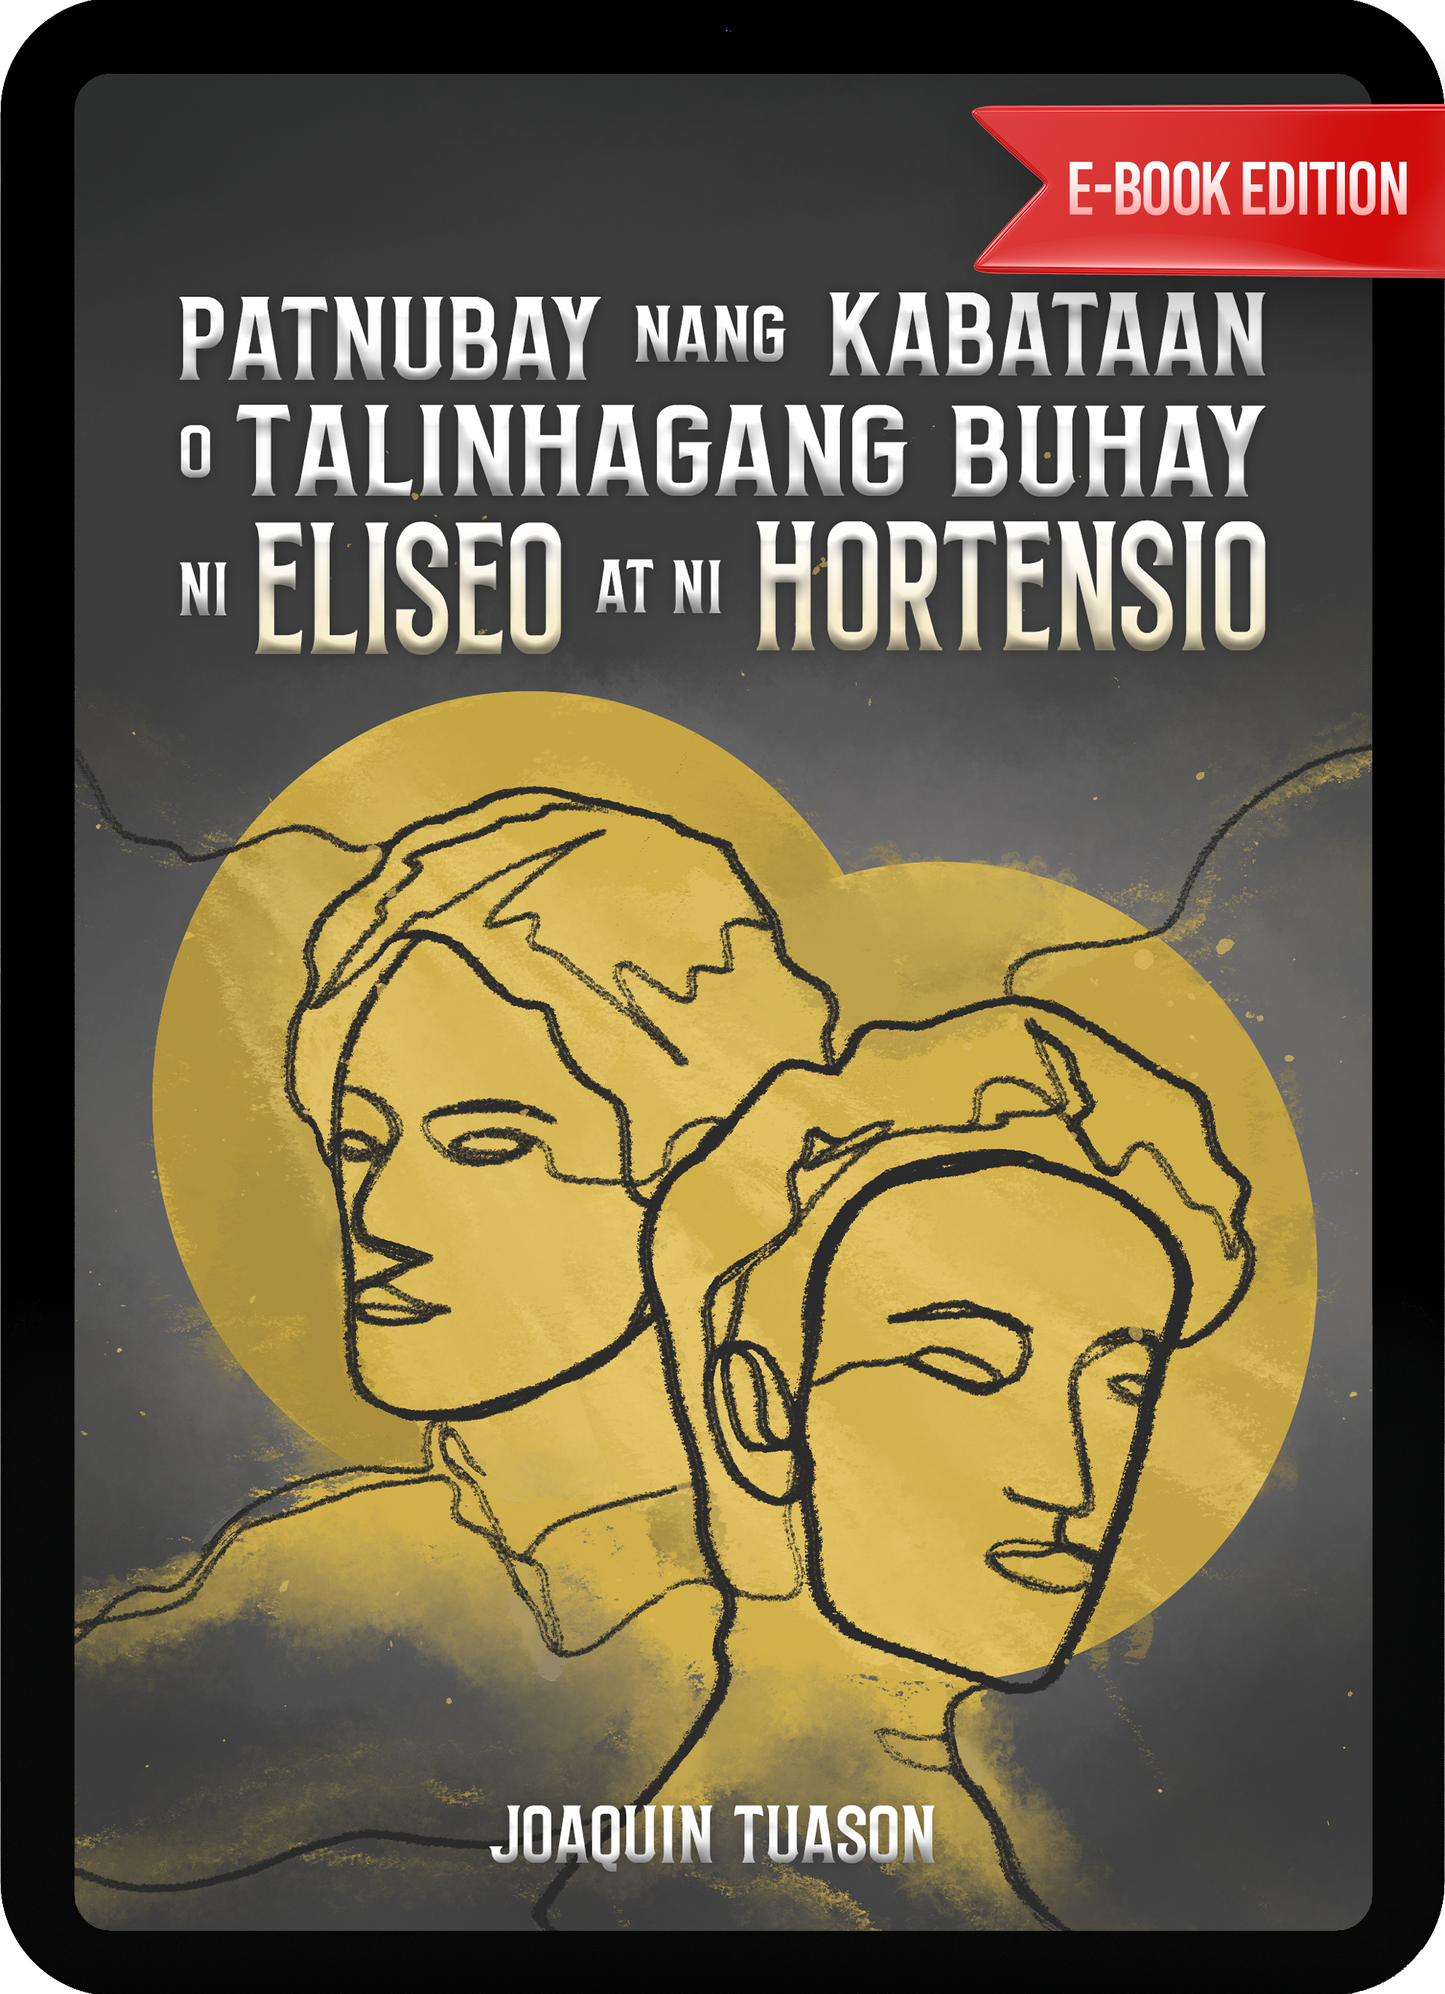 eBook - Patnubay nang kabataan o talinhagang buhay ni Eliseo at ni Hortensio by Joaquin Tuason